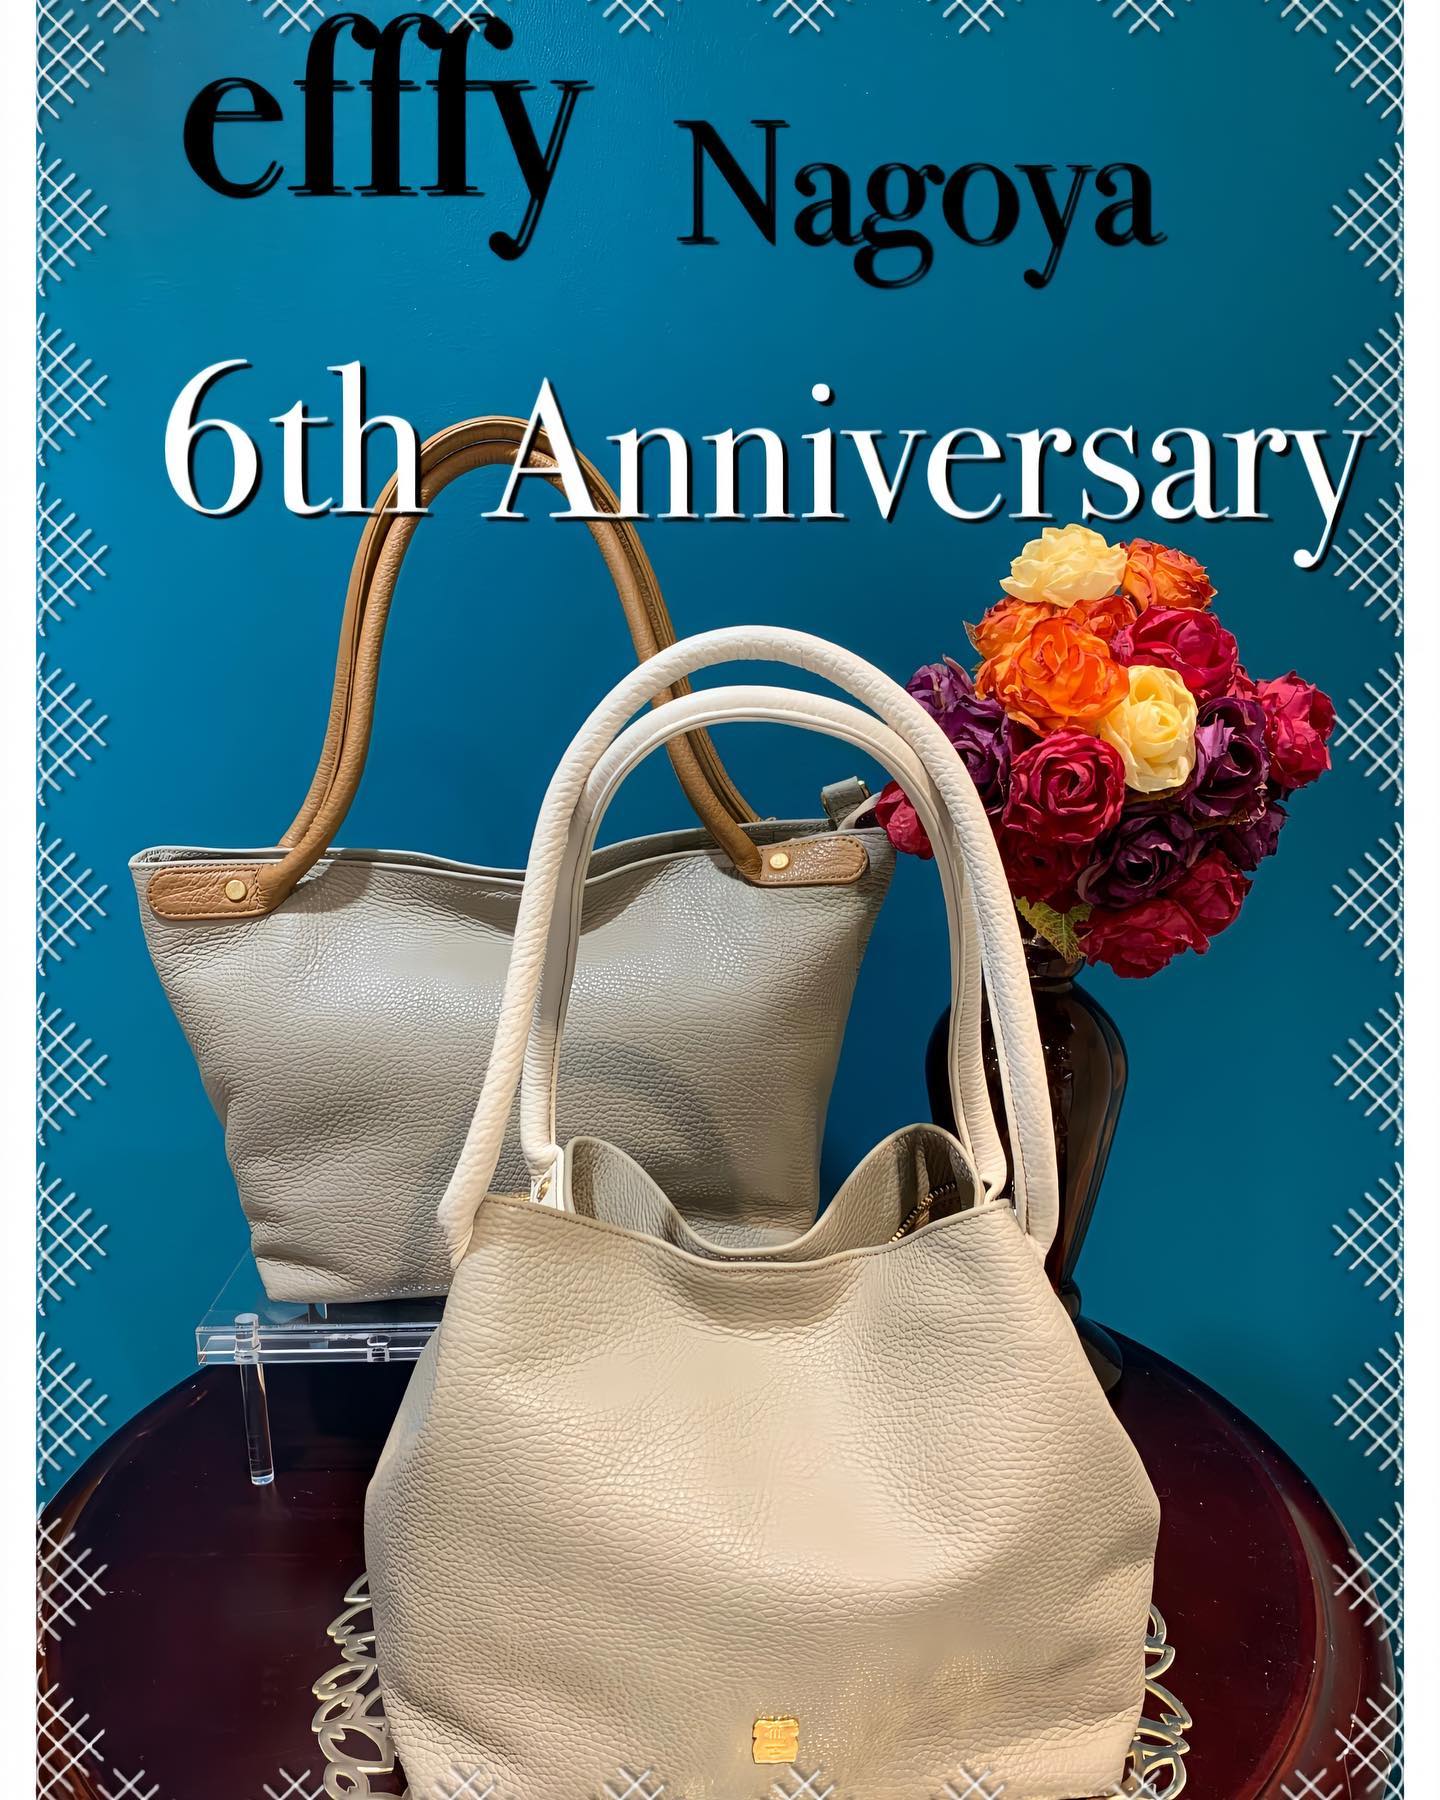 efffy nagoya6th Anniversary限定バッグ販売開始しました。efffy 名古屋店も9月で6周年を迎えることができました皆さまに感謝の言葉しかありませんいつもありがとございます️ 今年も限定バッグを作らさせて頂きましたこちらのバッグは変形する事ができます(写真でご確認下さい)持ち手がアイボリーとブラウンのバッグは同じバッグです変形する事により丸みを浴びてさらに可愛さがUPします️しかも、重さが約500グラムと革なのに軽量EN1-28 IV/GBE (手前)¥16,500  BR/GBE (後ろ)限定バッグをお買い上げのお客様にノベルティでマスクをお渡ししています。こちらのバッグはエフィー名古屋店のみの数量限定バッグとなりますので、ご了承下さいませ。#efffy#エフィー#限定バッグ #数量限定#madeinjapan #イタリアンレザー #かわいい #きれいめカジュアル #バイカラーの #垢抜け感 #エフィー名古屋店 #ユニモール6番出口すぐ #ご来店お待ちしております。